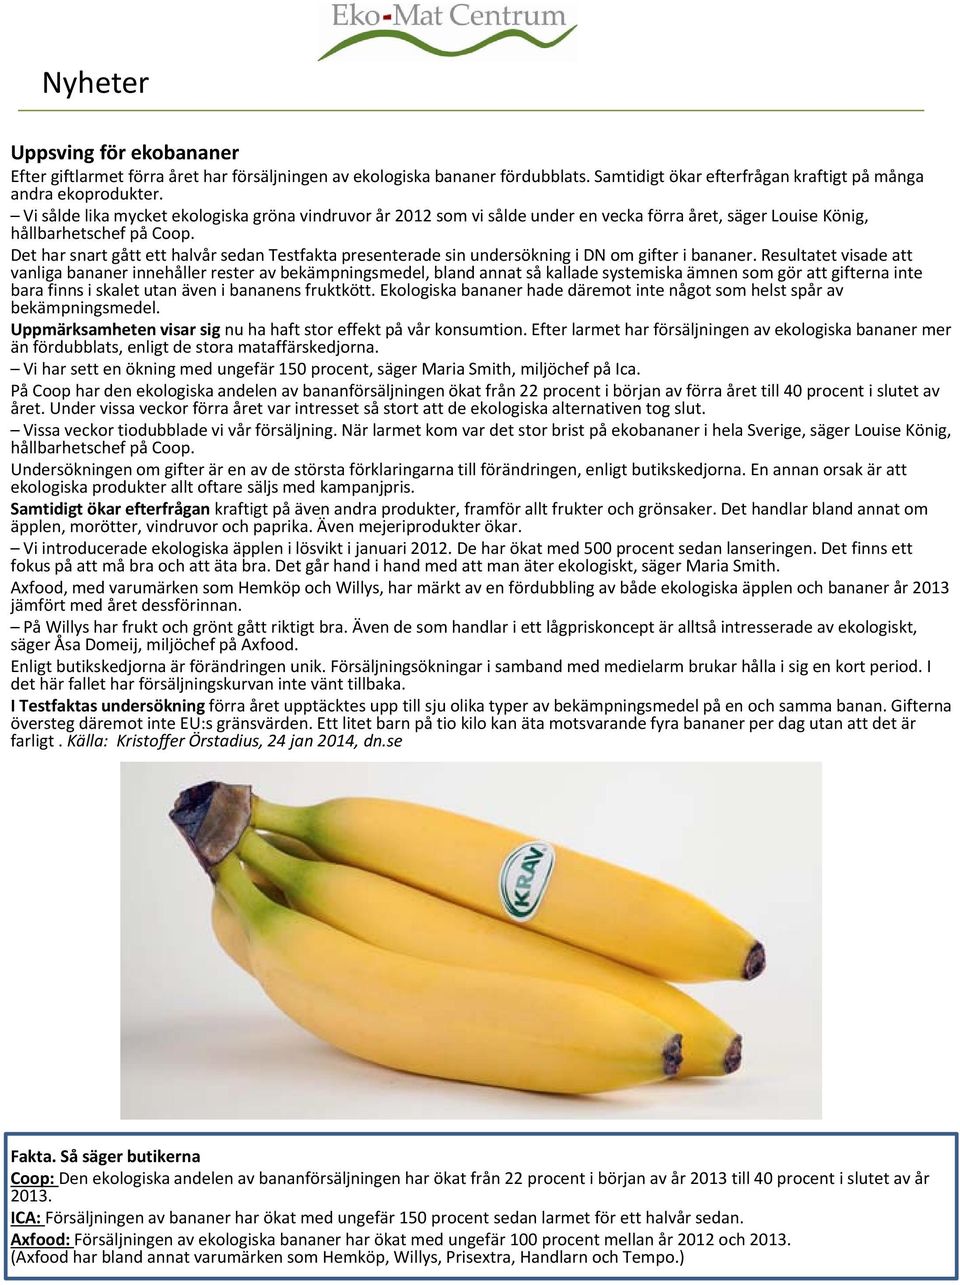 Det har snart gått ett halvår sedan Testfakta presenterade sin undersökning i DN om gifter i bananer.